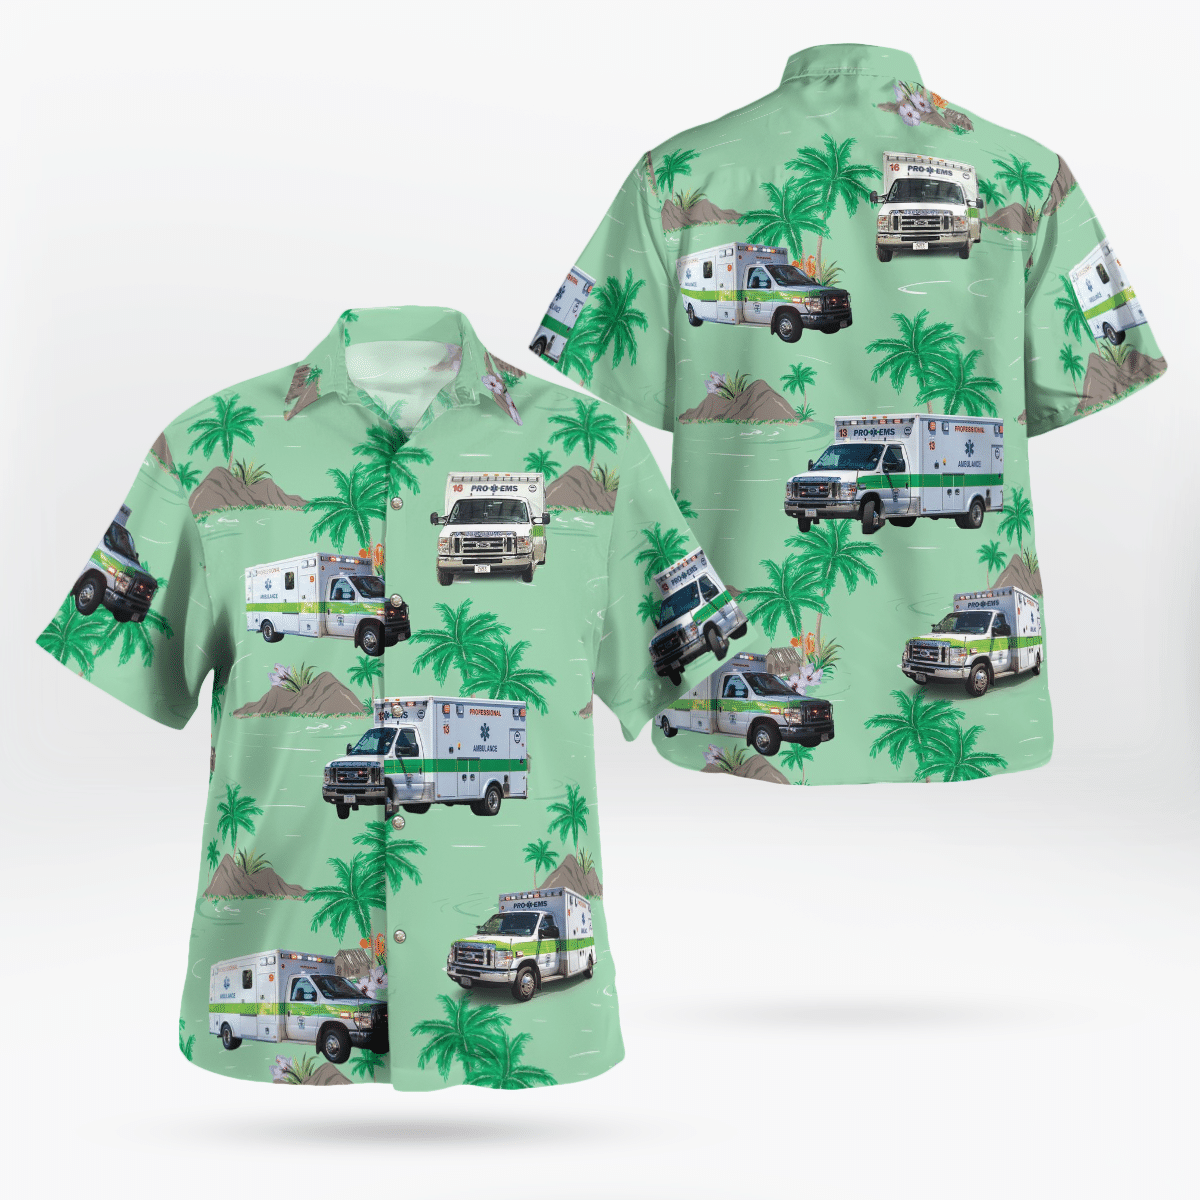 NEW Pro EMS Hawaii Shirt